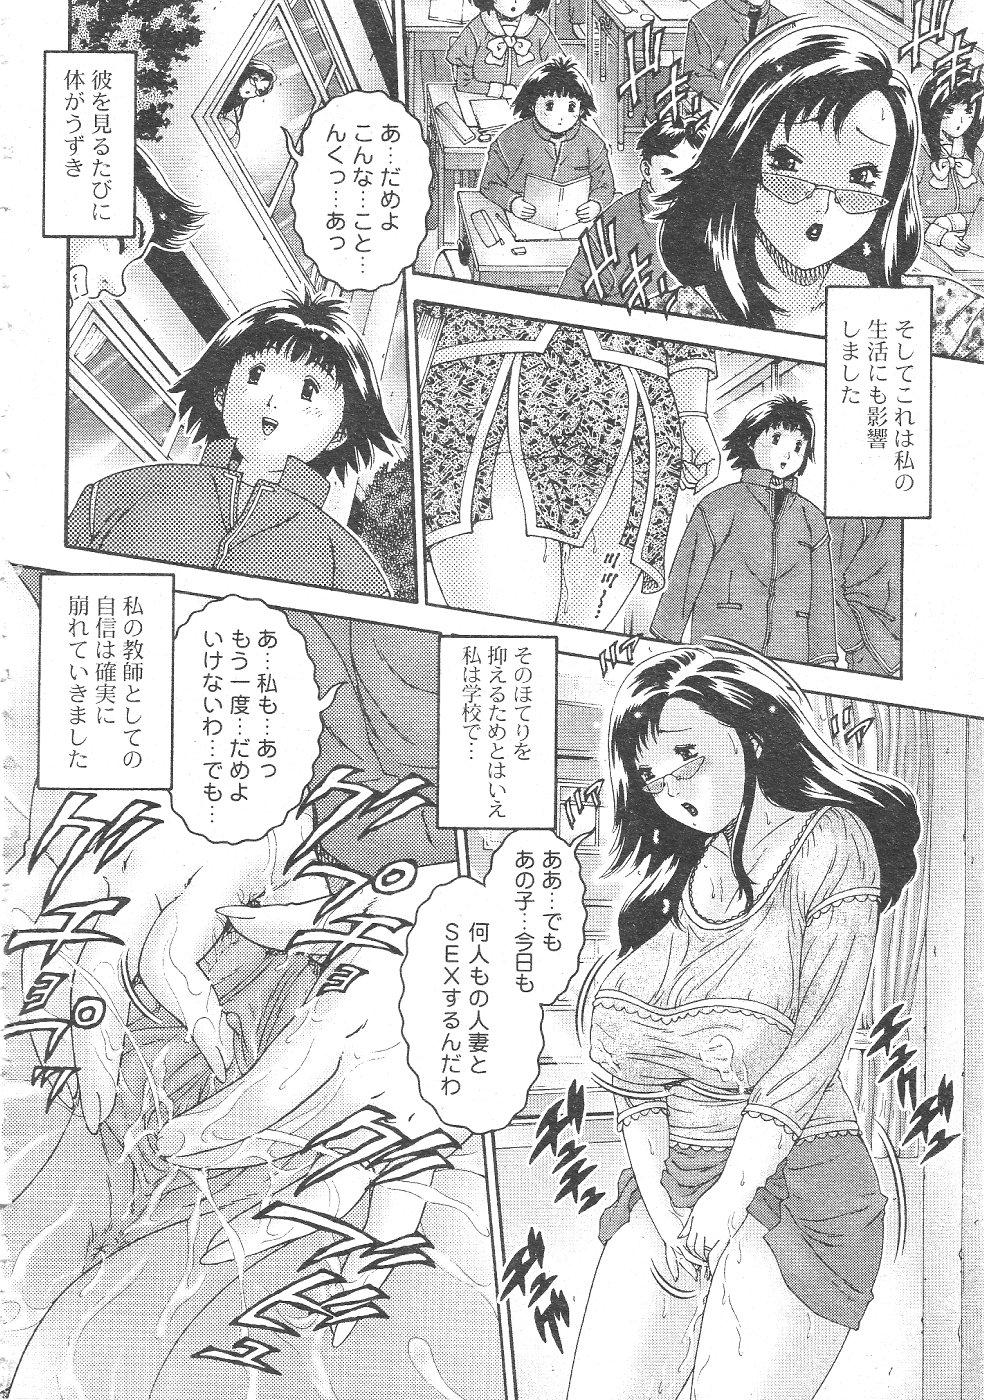 Gekkan Comic Muga 2004-06 Vol.10 190